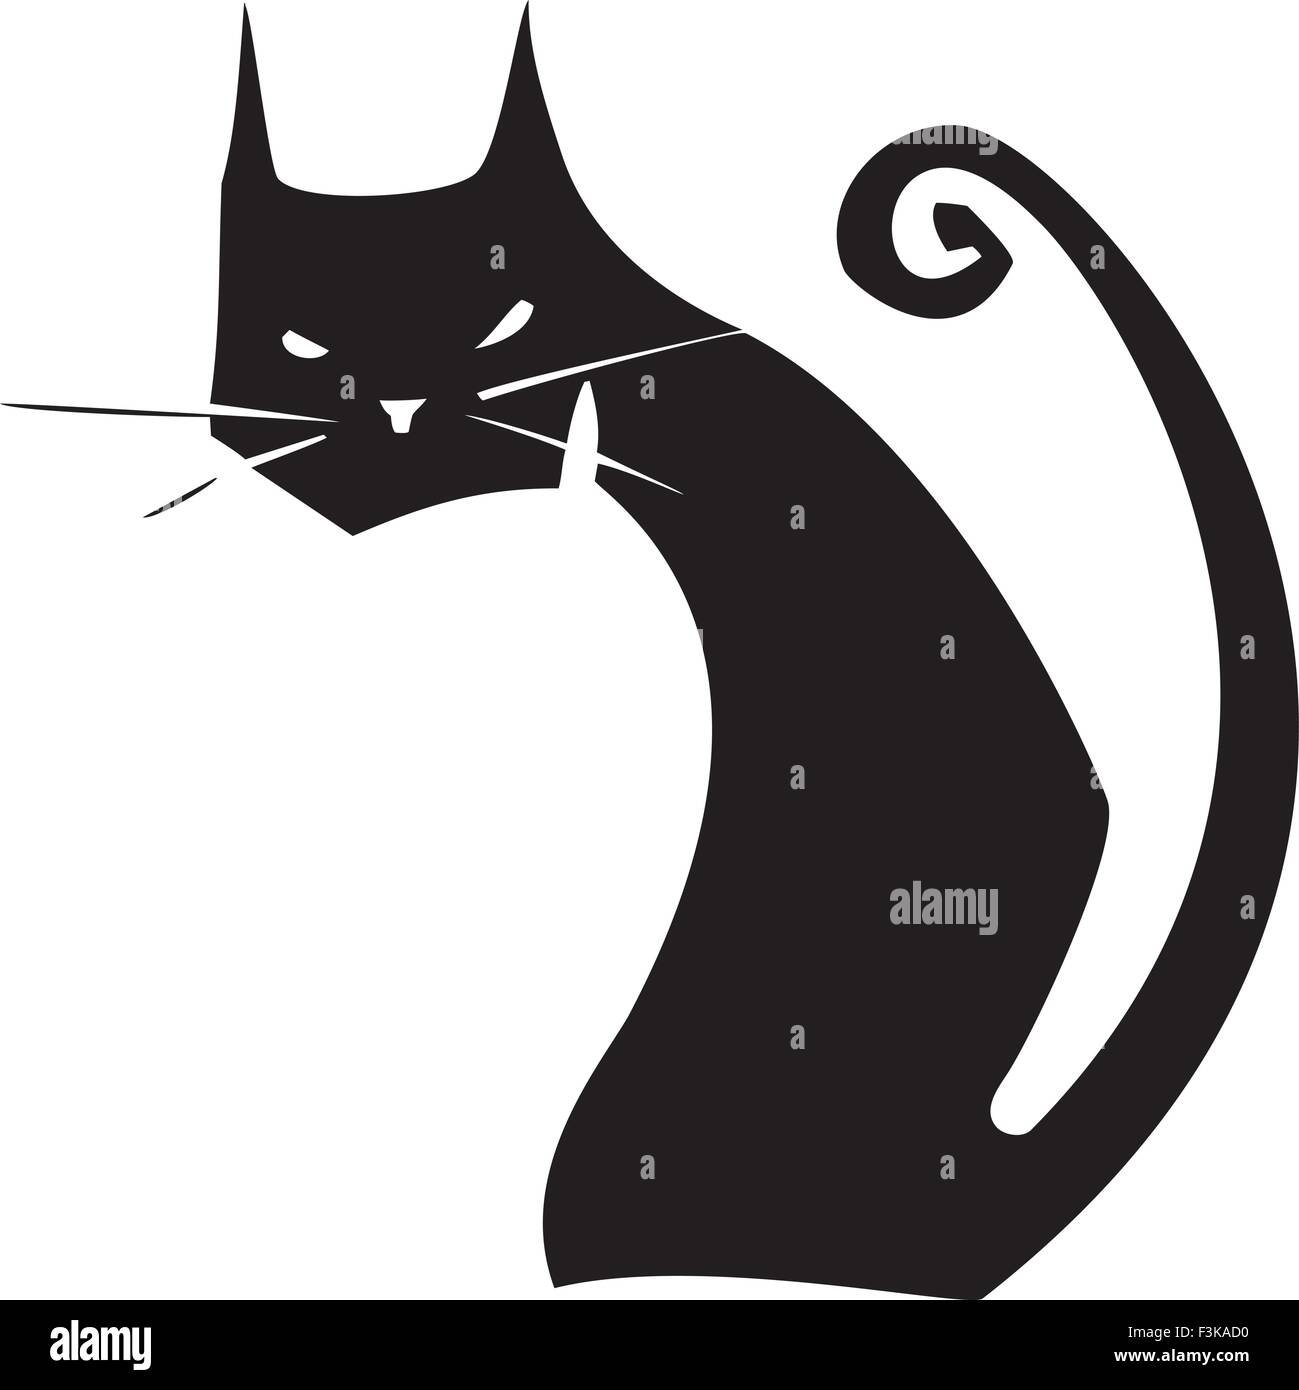 Imagen simple de un gato negro con una cola rizada Ilustración del Vector